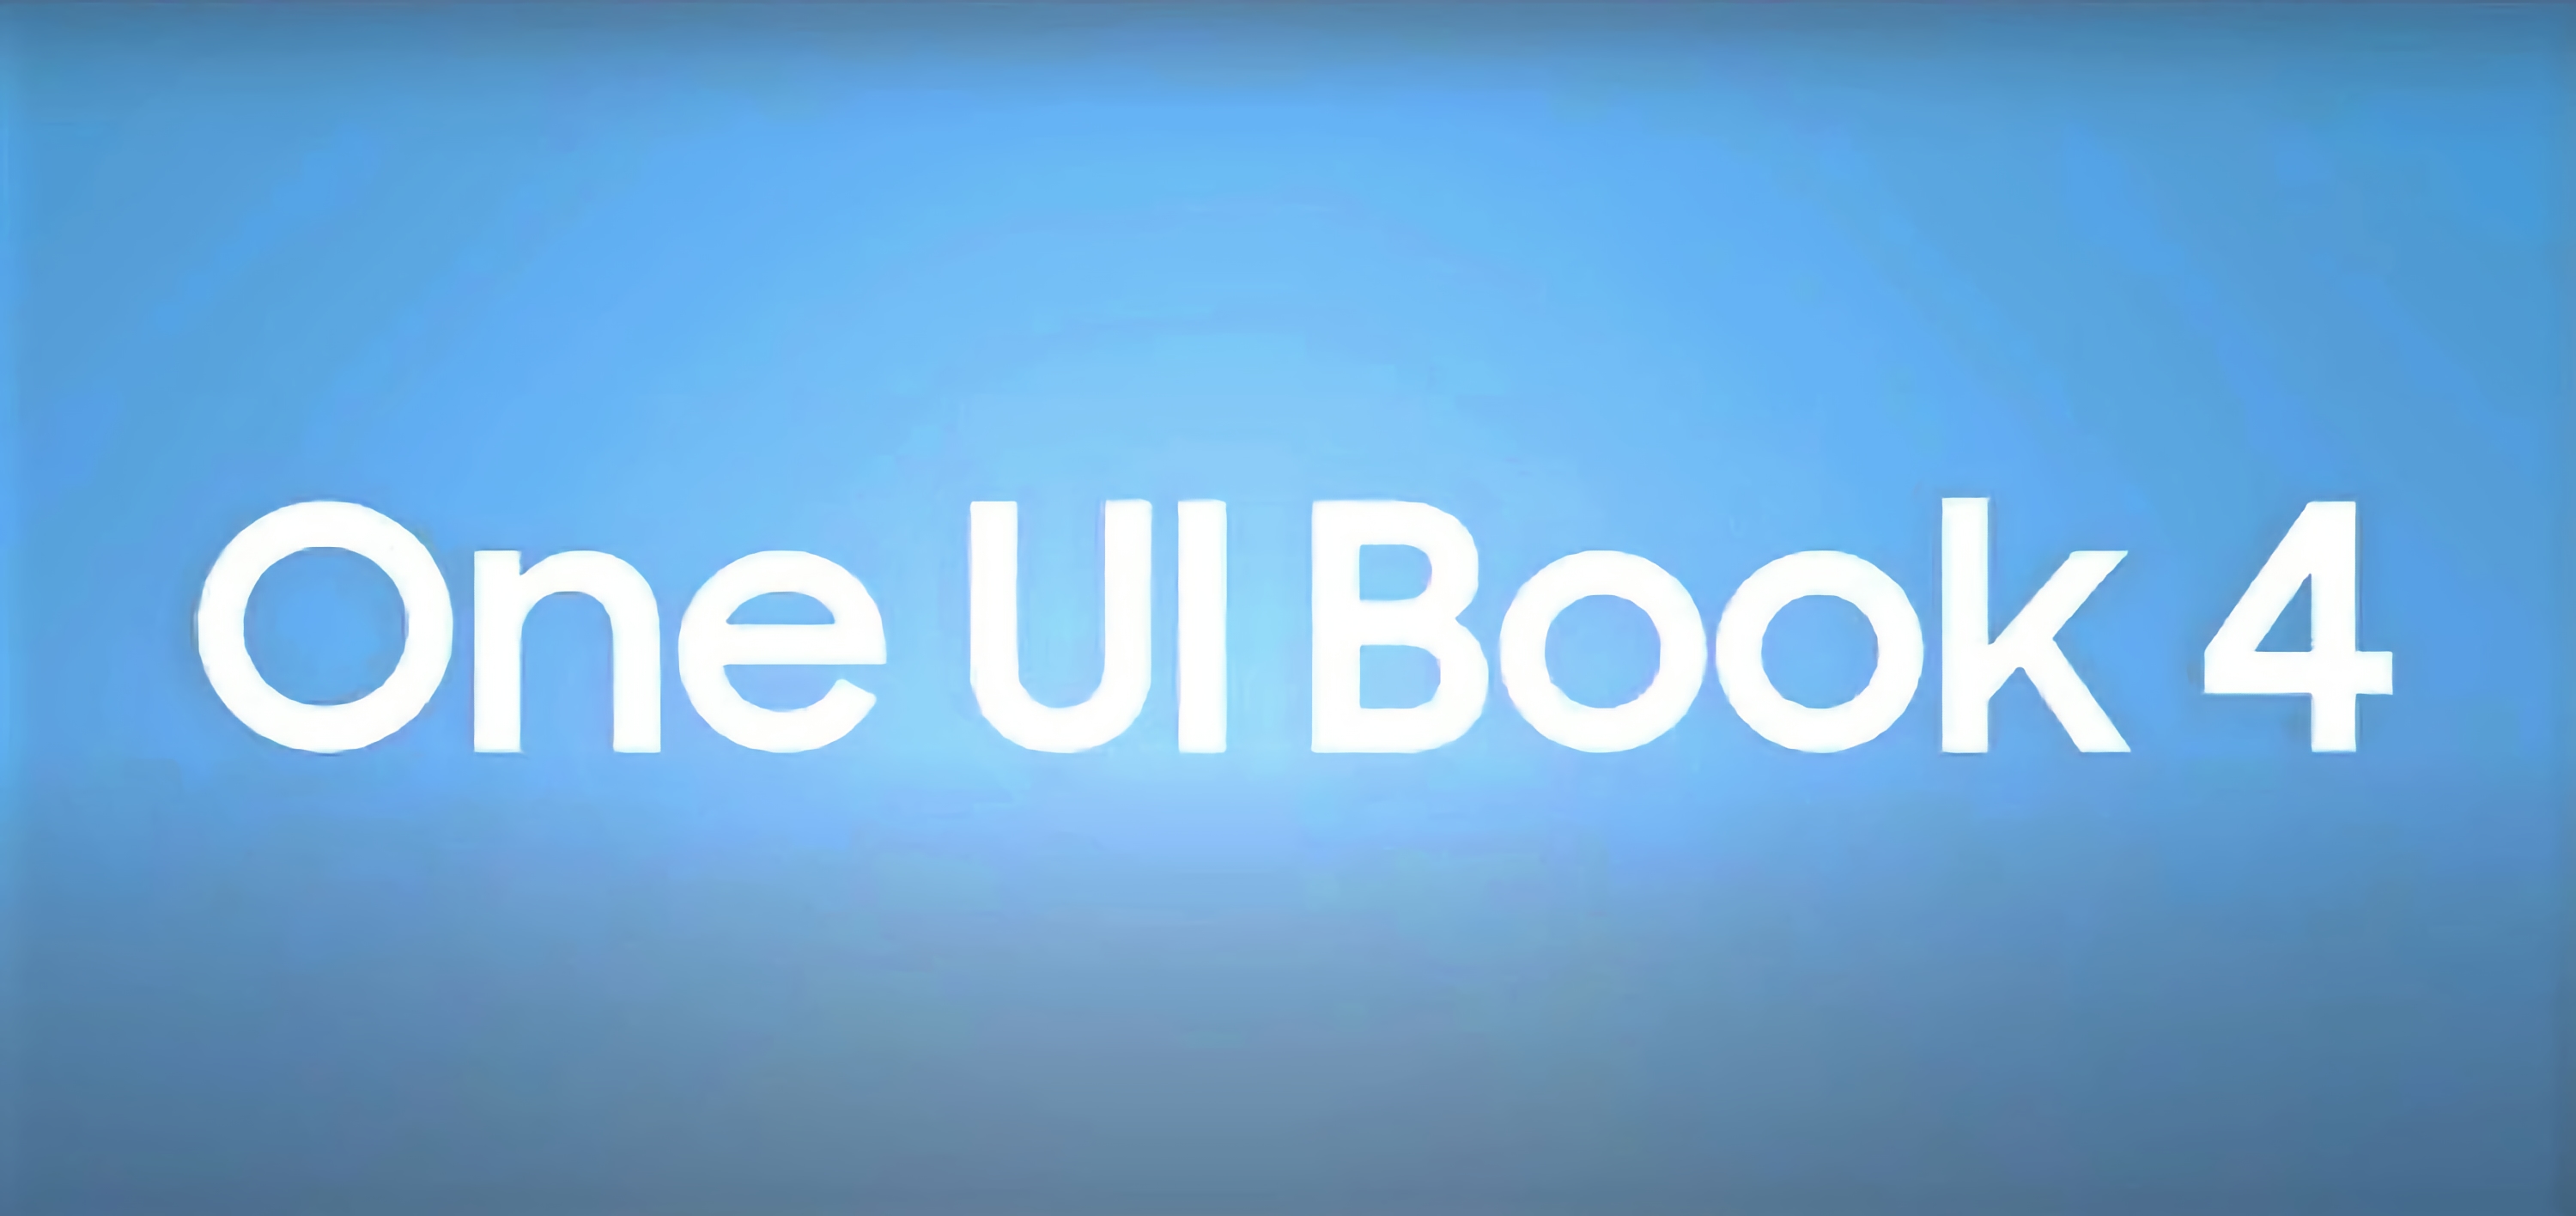 Samsung stellt One UI Book 4 vor: eine gebrandete Hülle für Windows-Notebooks